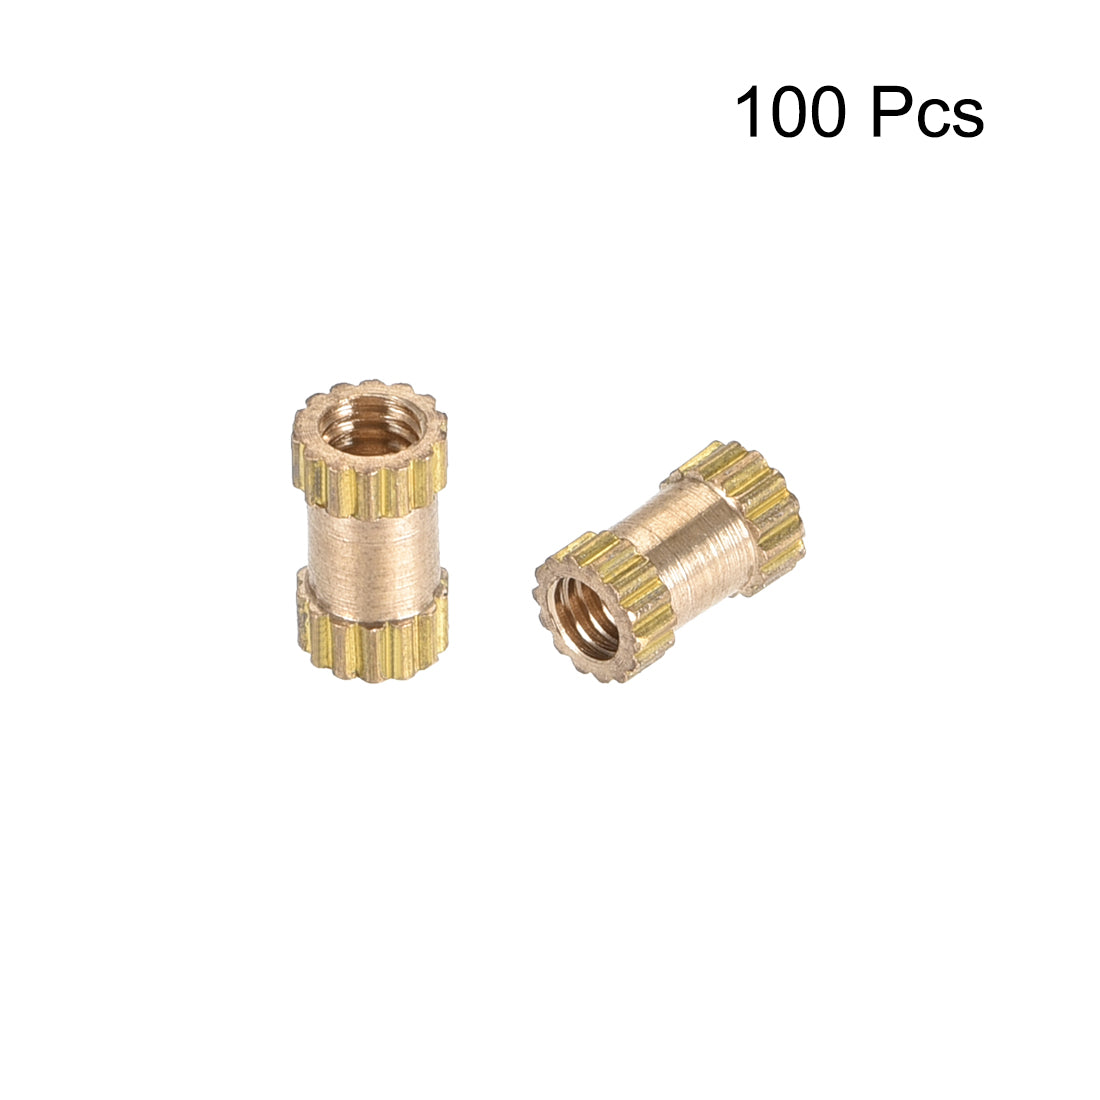 uxcell Uxcell Knurled Insert Nuts, M2.5 x 6mm(L) x 3.5mm(OD) Female Thread Brass Embedment Assortment Kit, 100 Pcs